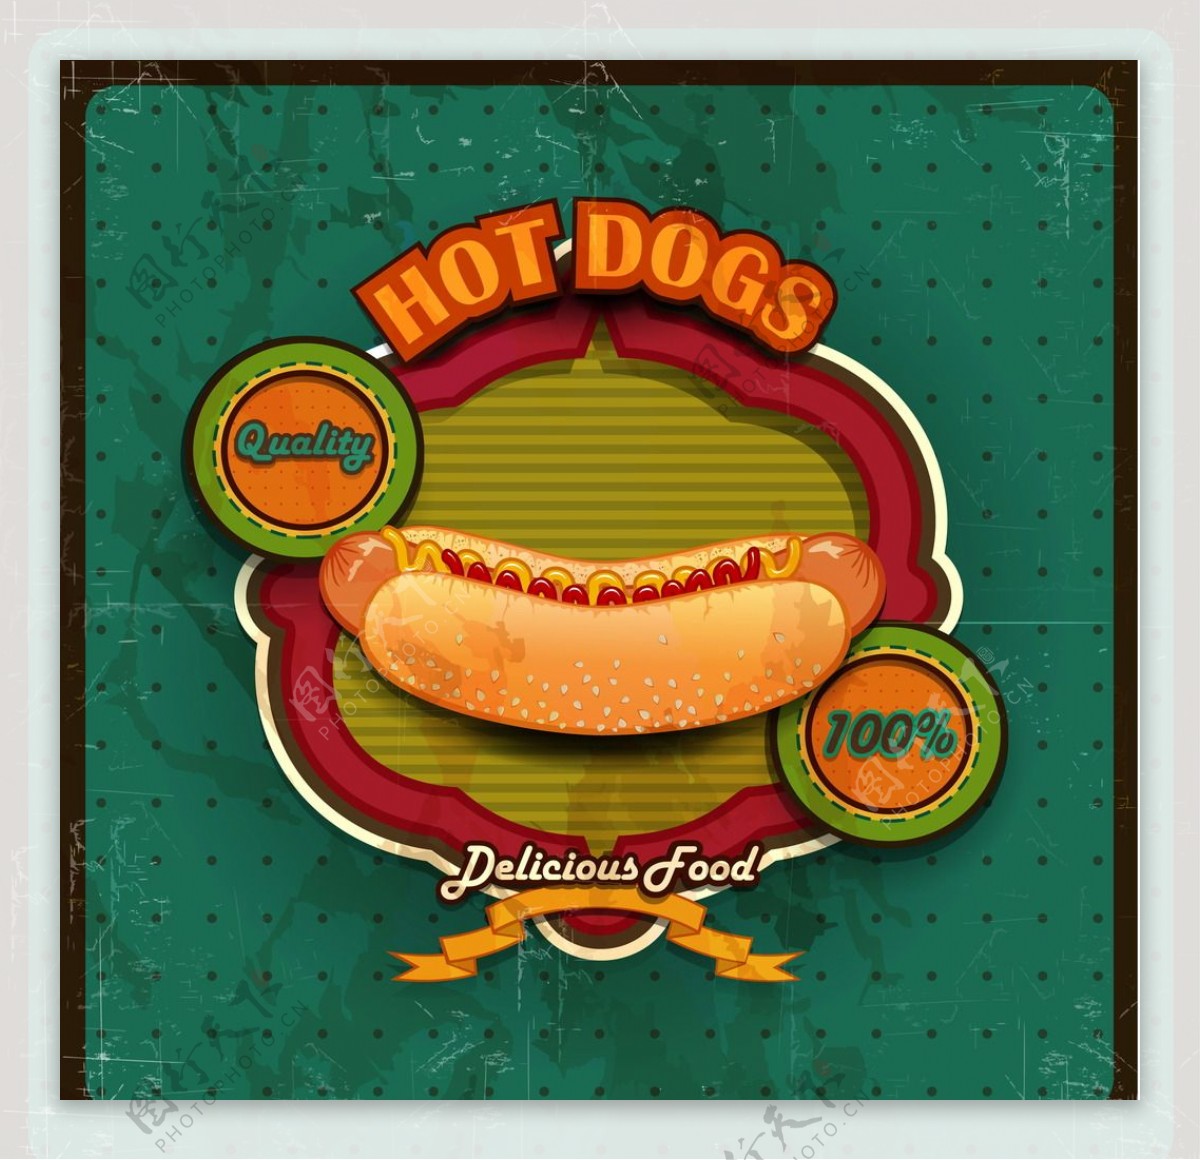 Hot Dog mal anders | EDEKA